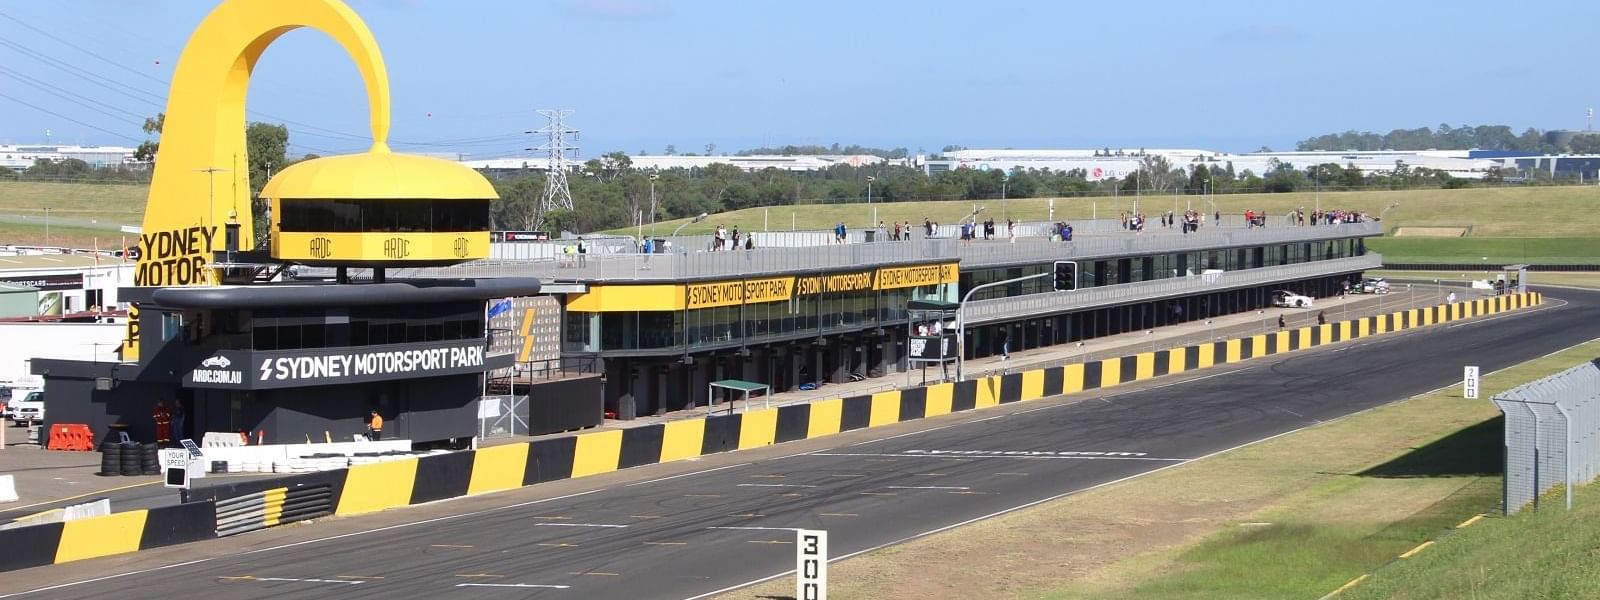 Sydney Motorsport Park near Mercure Sydney Parramatta